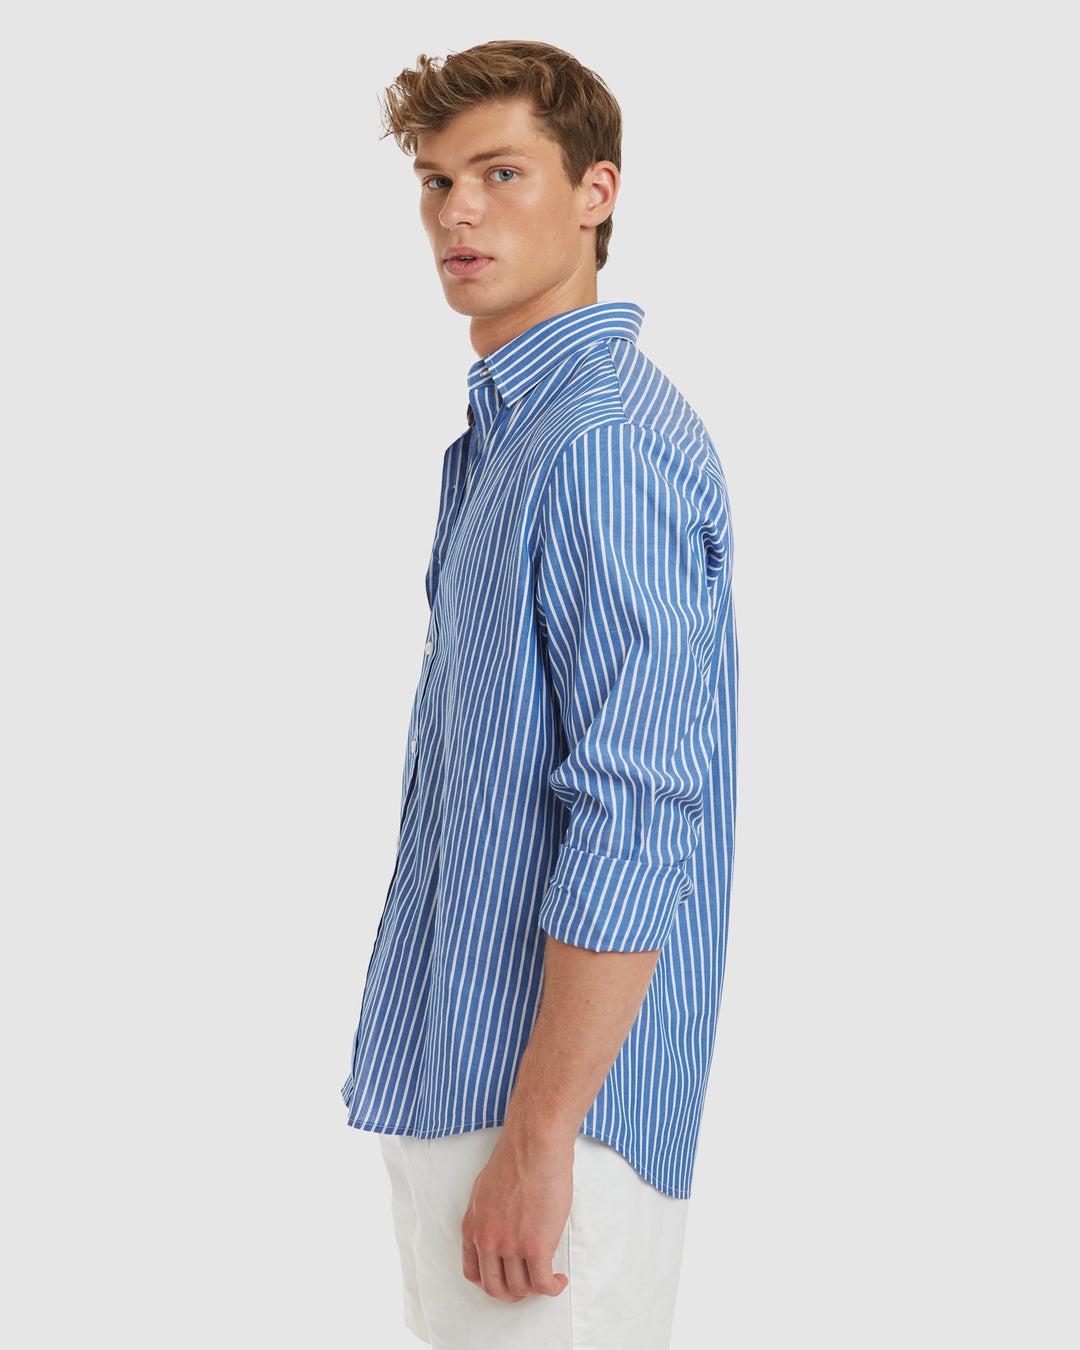 Vegas Blue Stripes Cotton Shirt  - Casual Fit